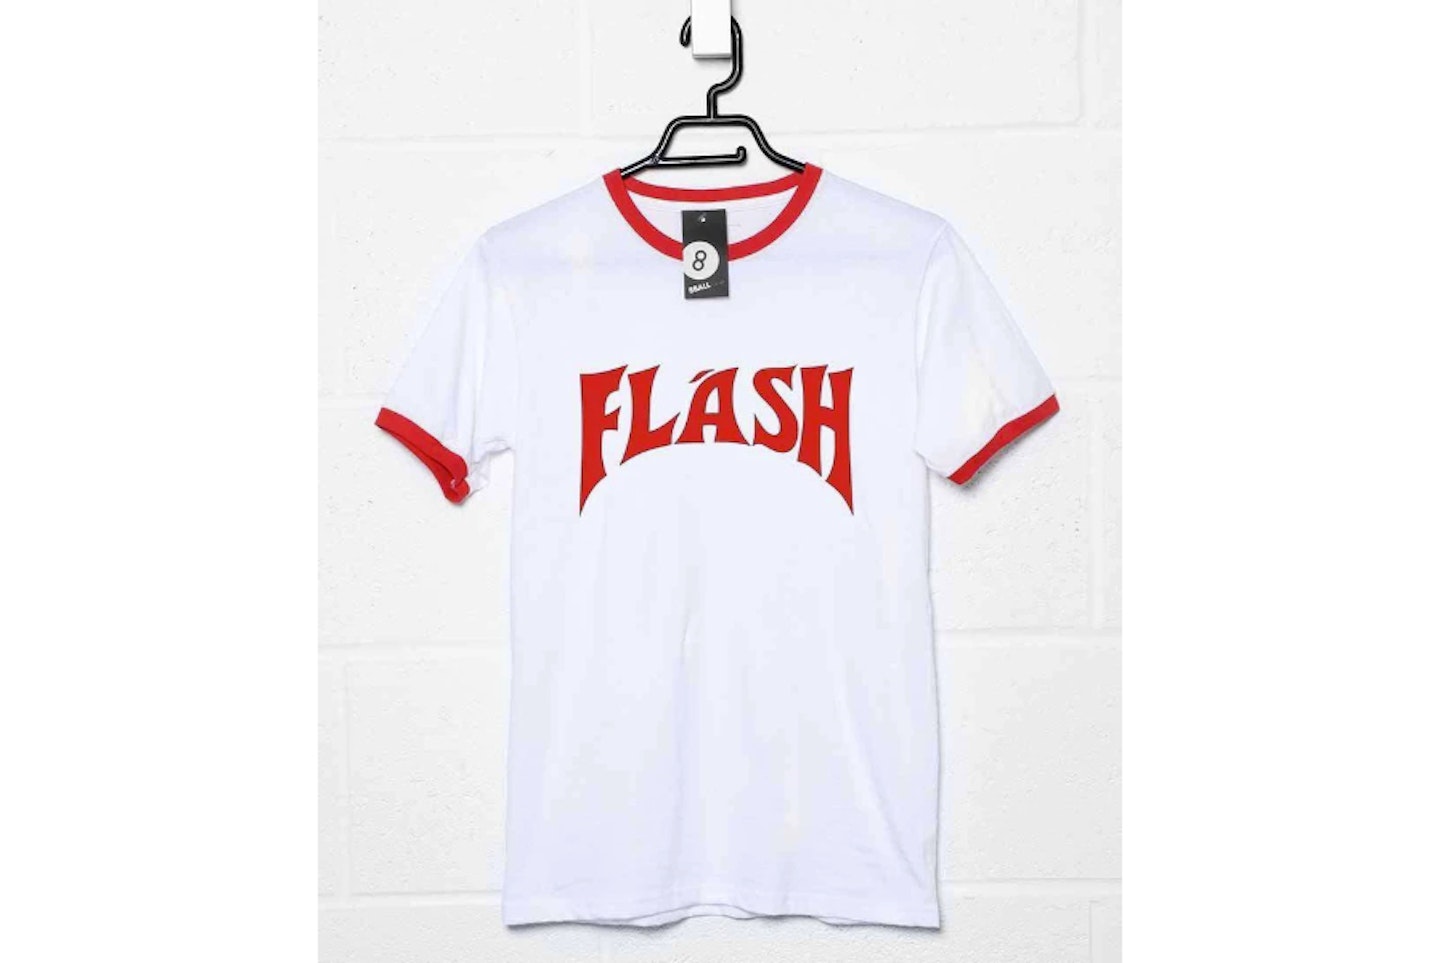 Flash – Flash Gordon, 1980